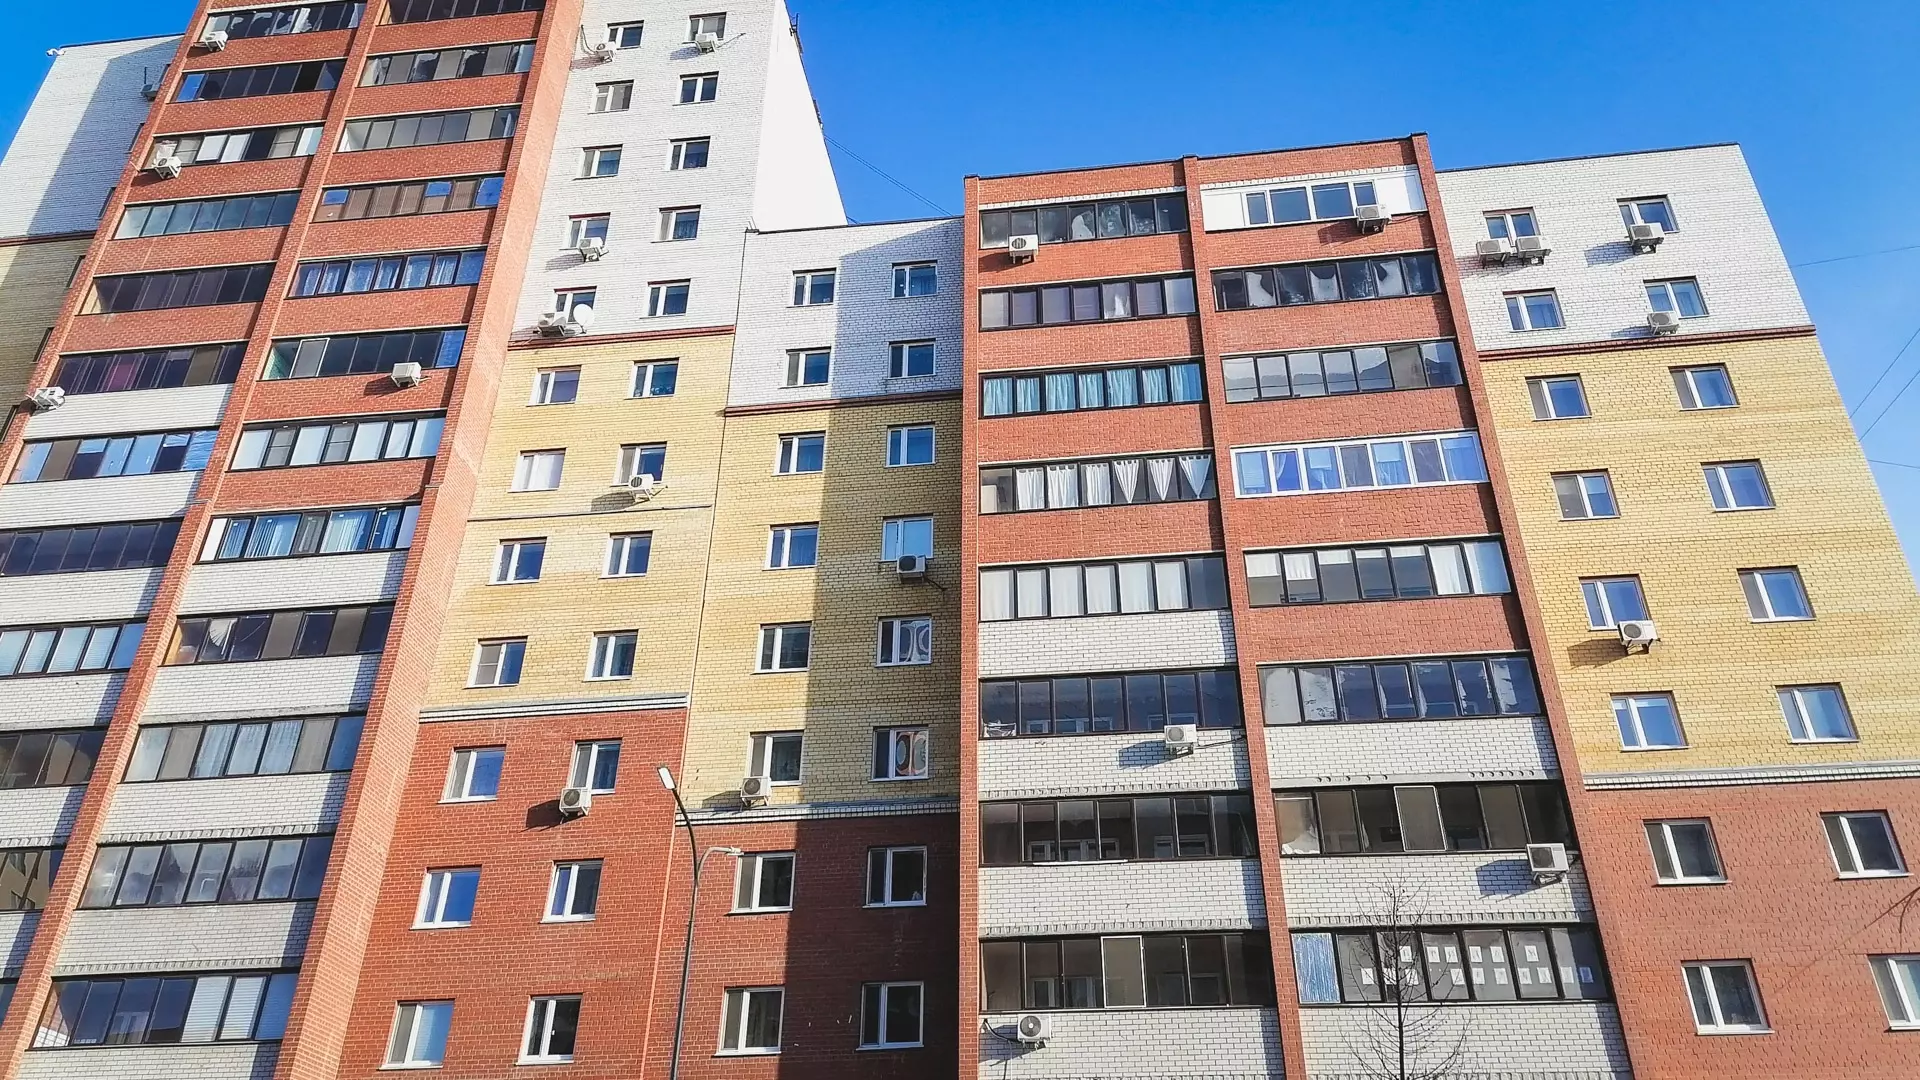 Цены на посуточную аренду квартир выросли перед 8 Марта в Нижнем Новгороде